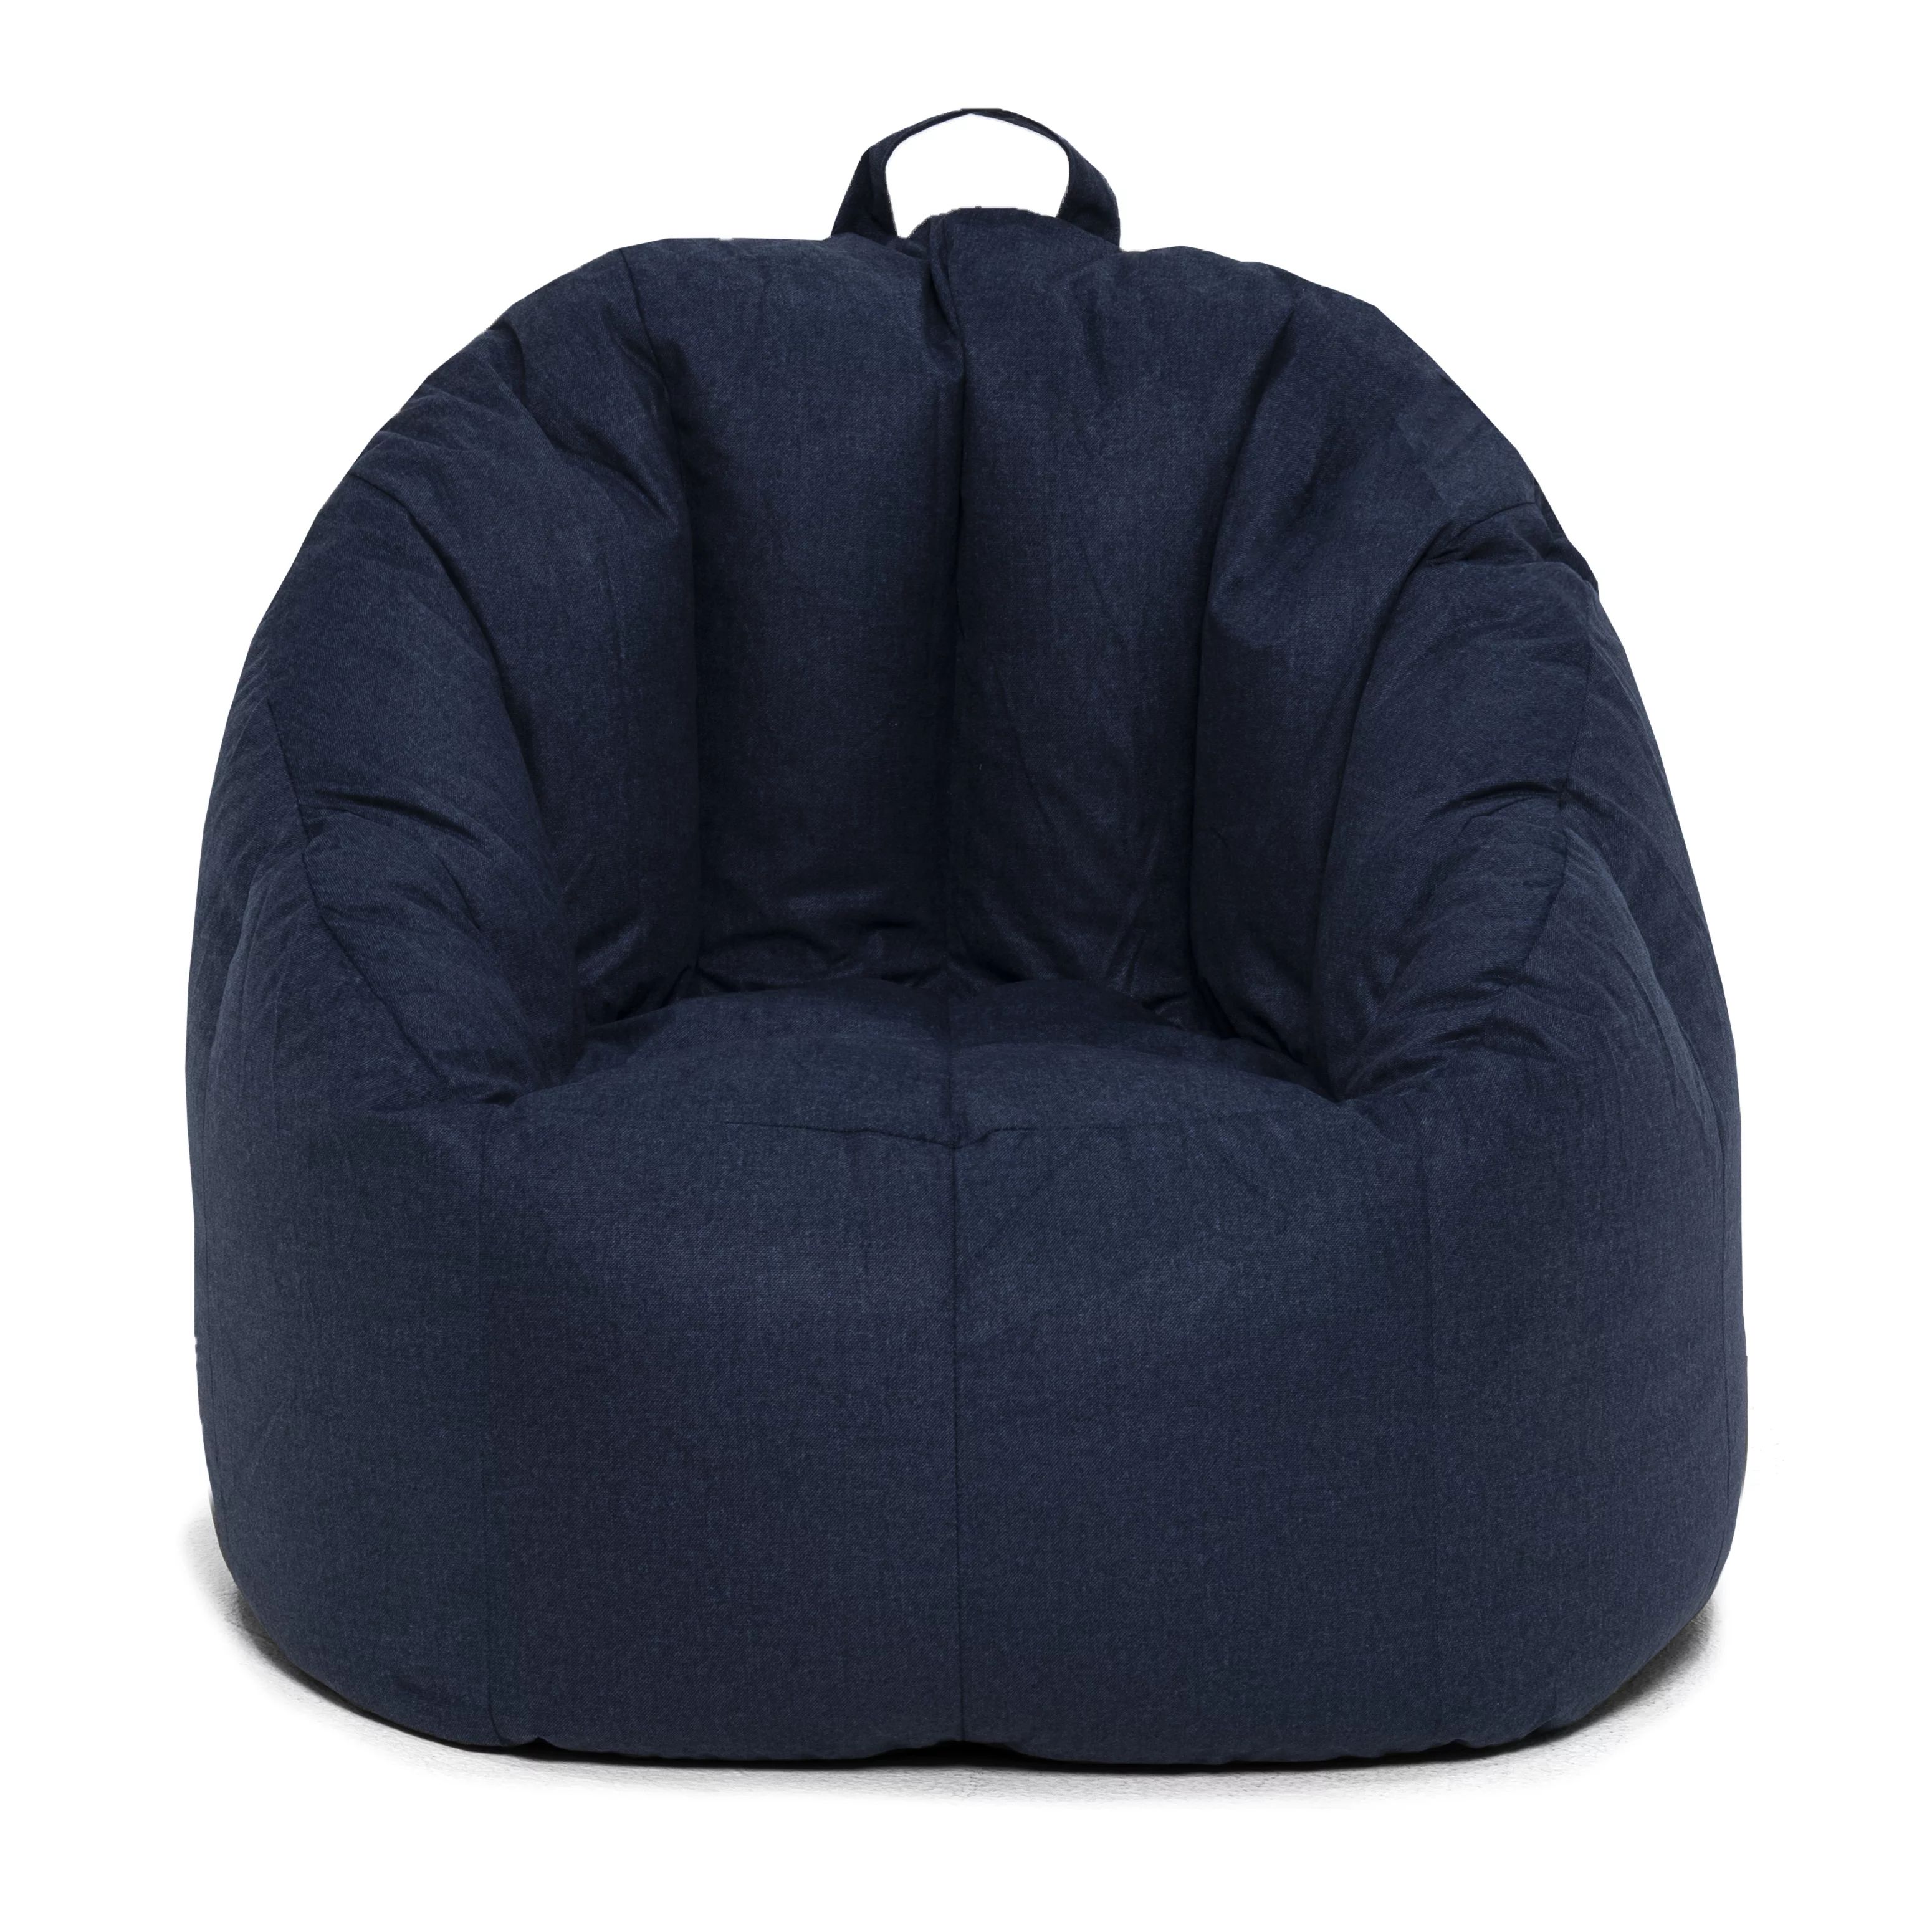 Big Joe Joey Bean Bag Chair, Blue Denim Lenox - Walmart.com | Walmart (US)